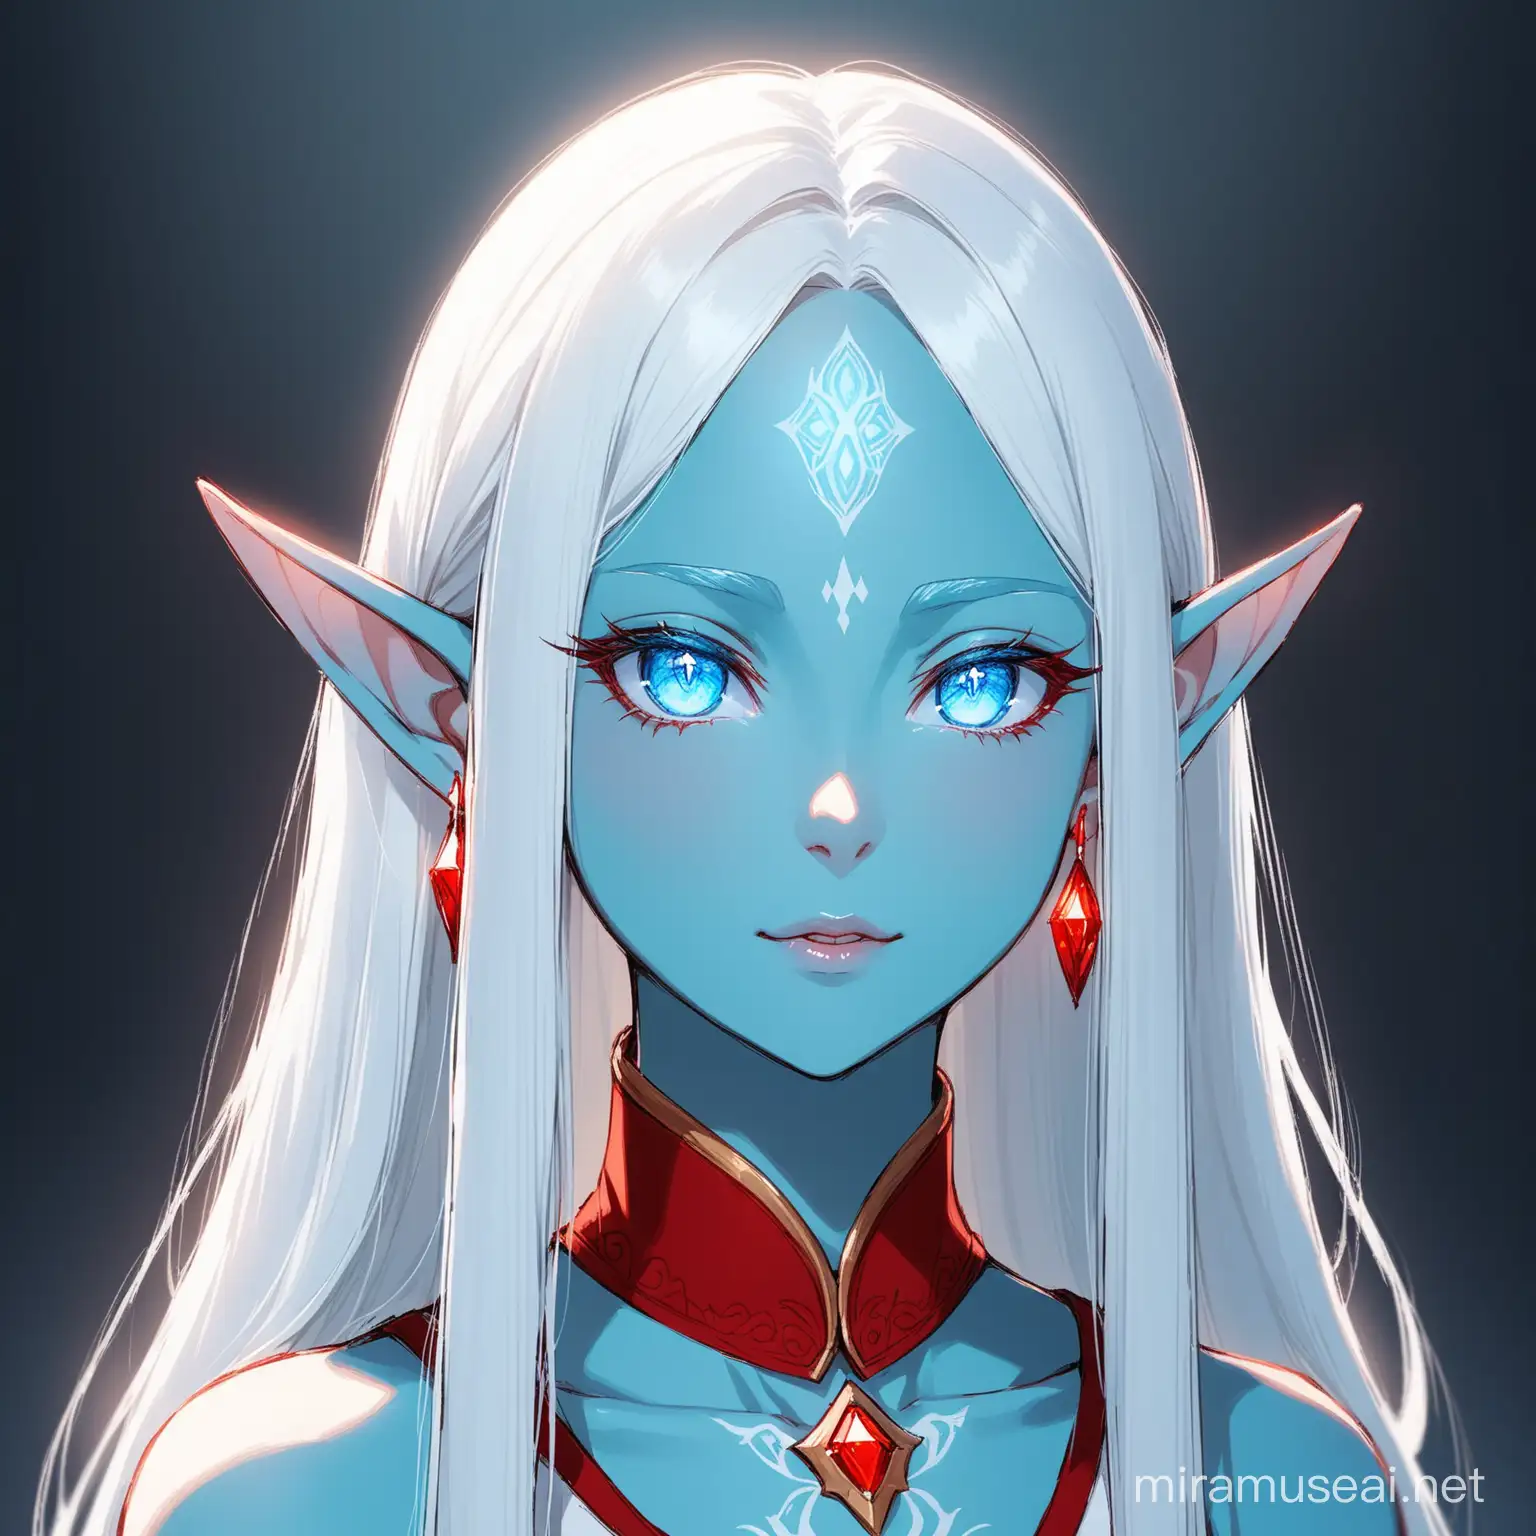 Female with light blue skin and light blue eyes, elf ears, white long straight hair, red earrings